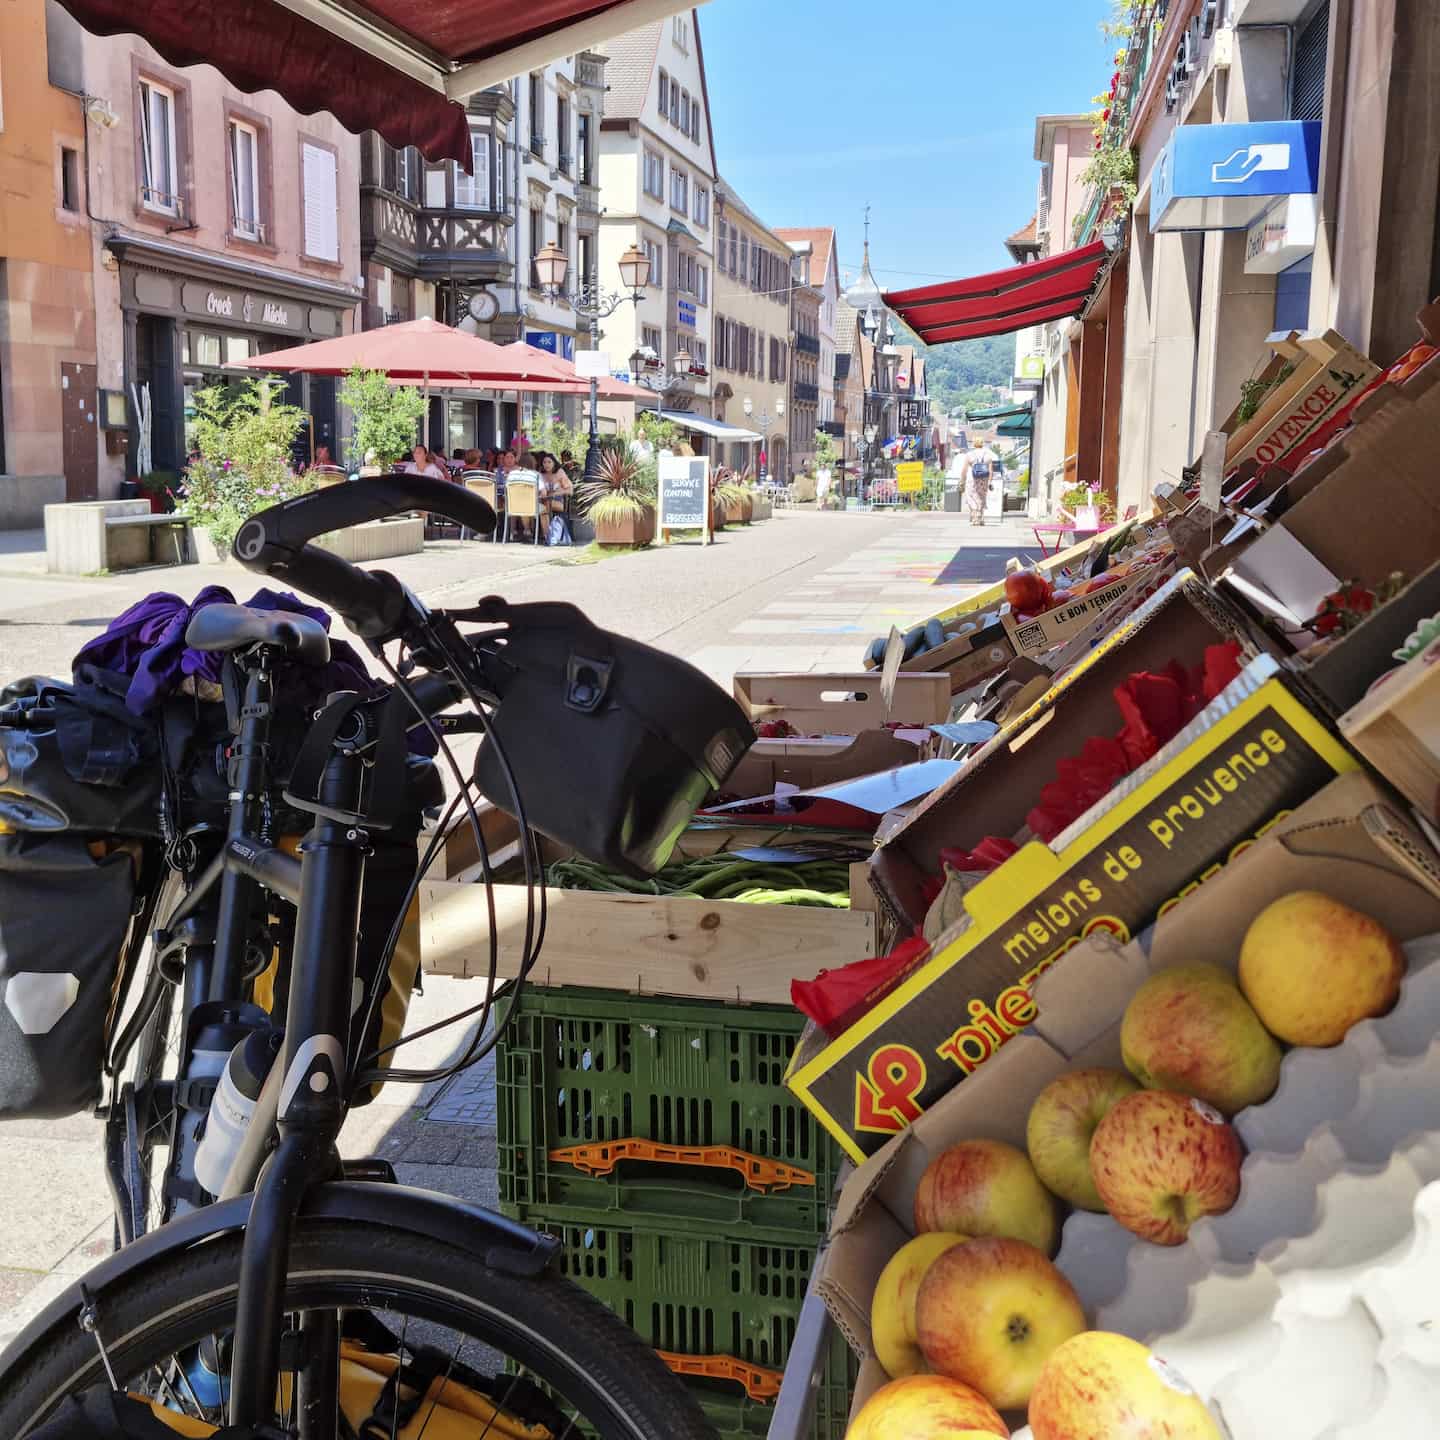 Fruit kopen voor onderweg tijdens de fietsvakantie